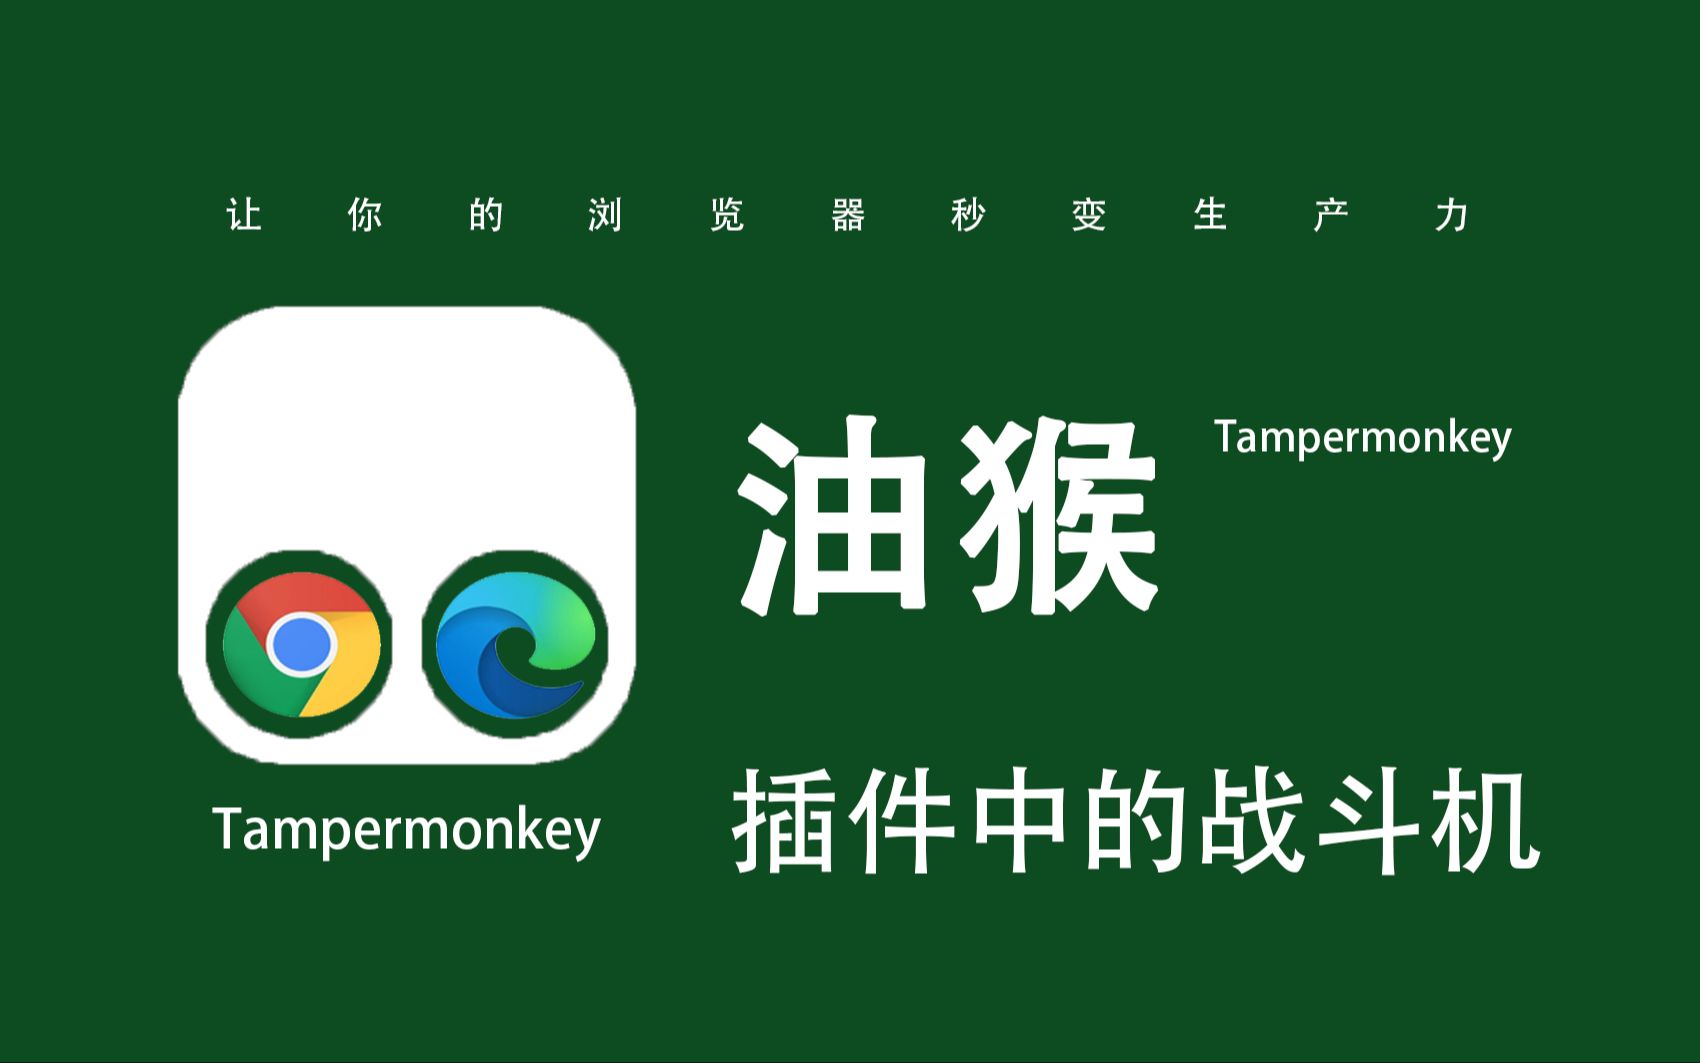 油猴Tampermonkey，强大的浏览器插件！手把手教你安装油猴下载脚本，超级简单免费使用！